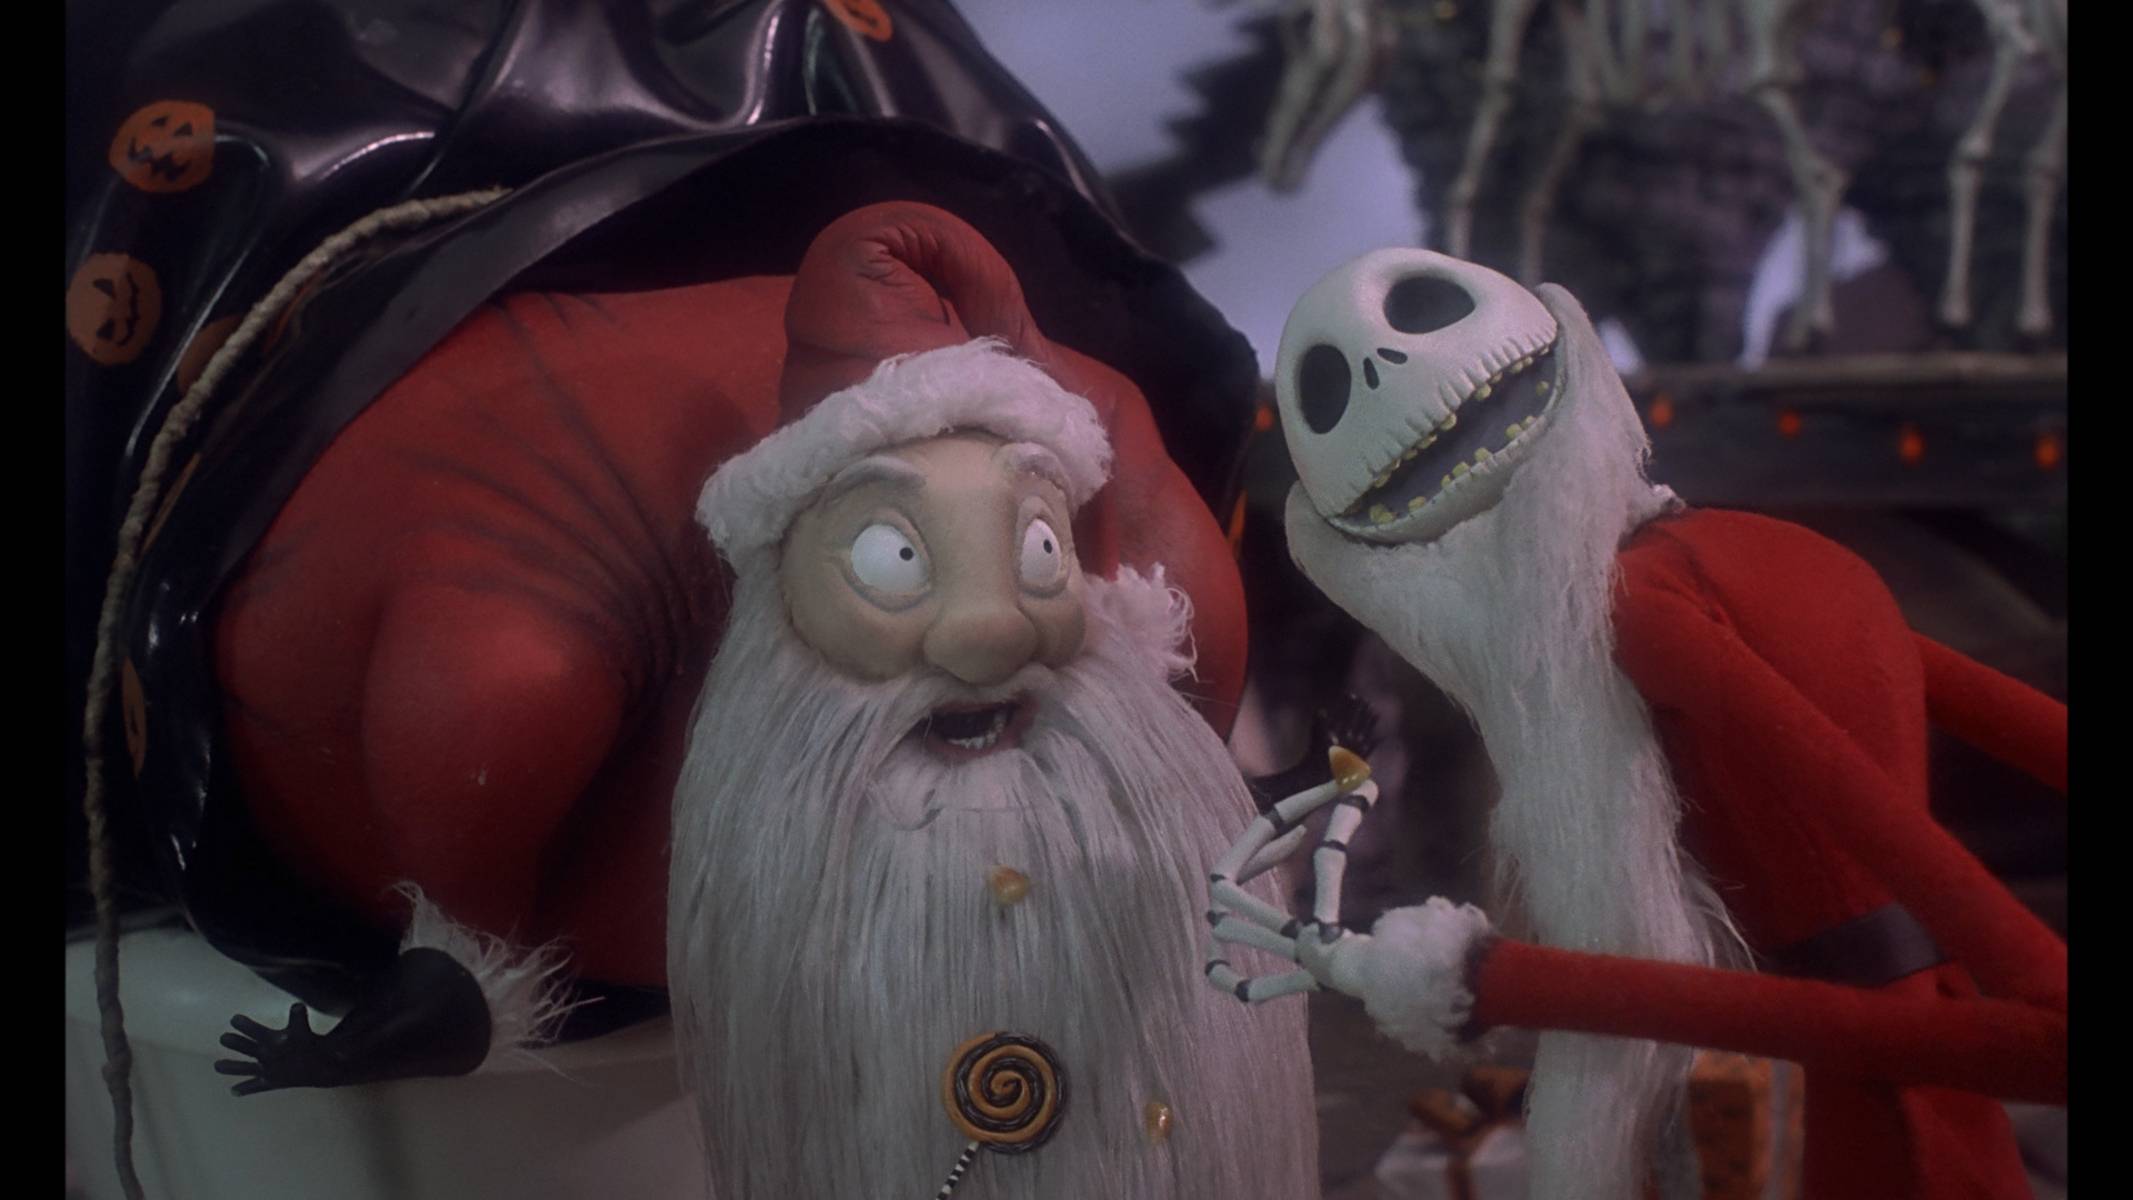 The Nightmare Before Christmas через призму видения параноика